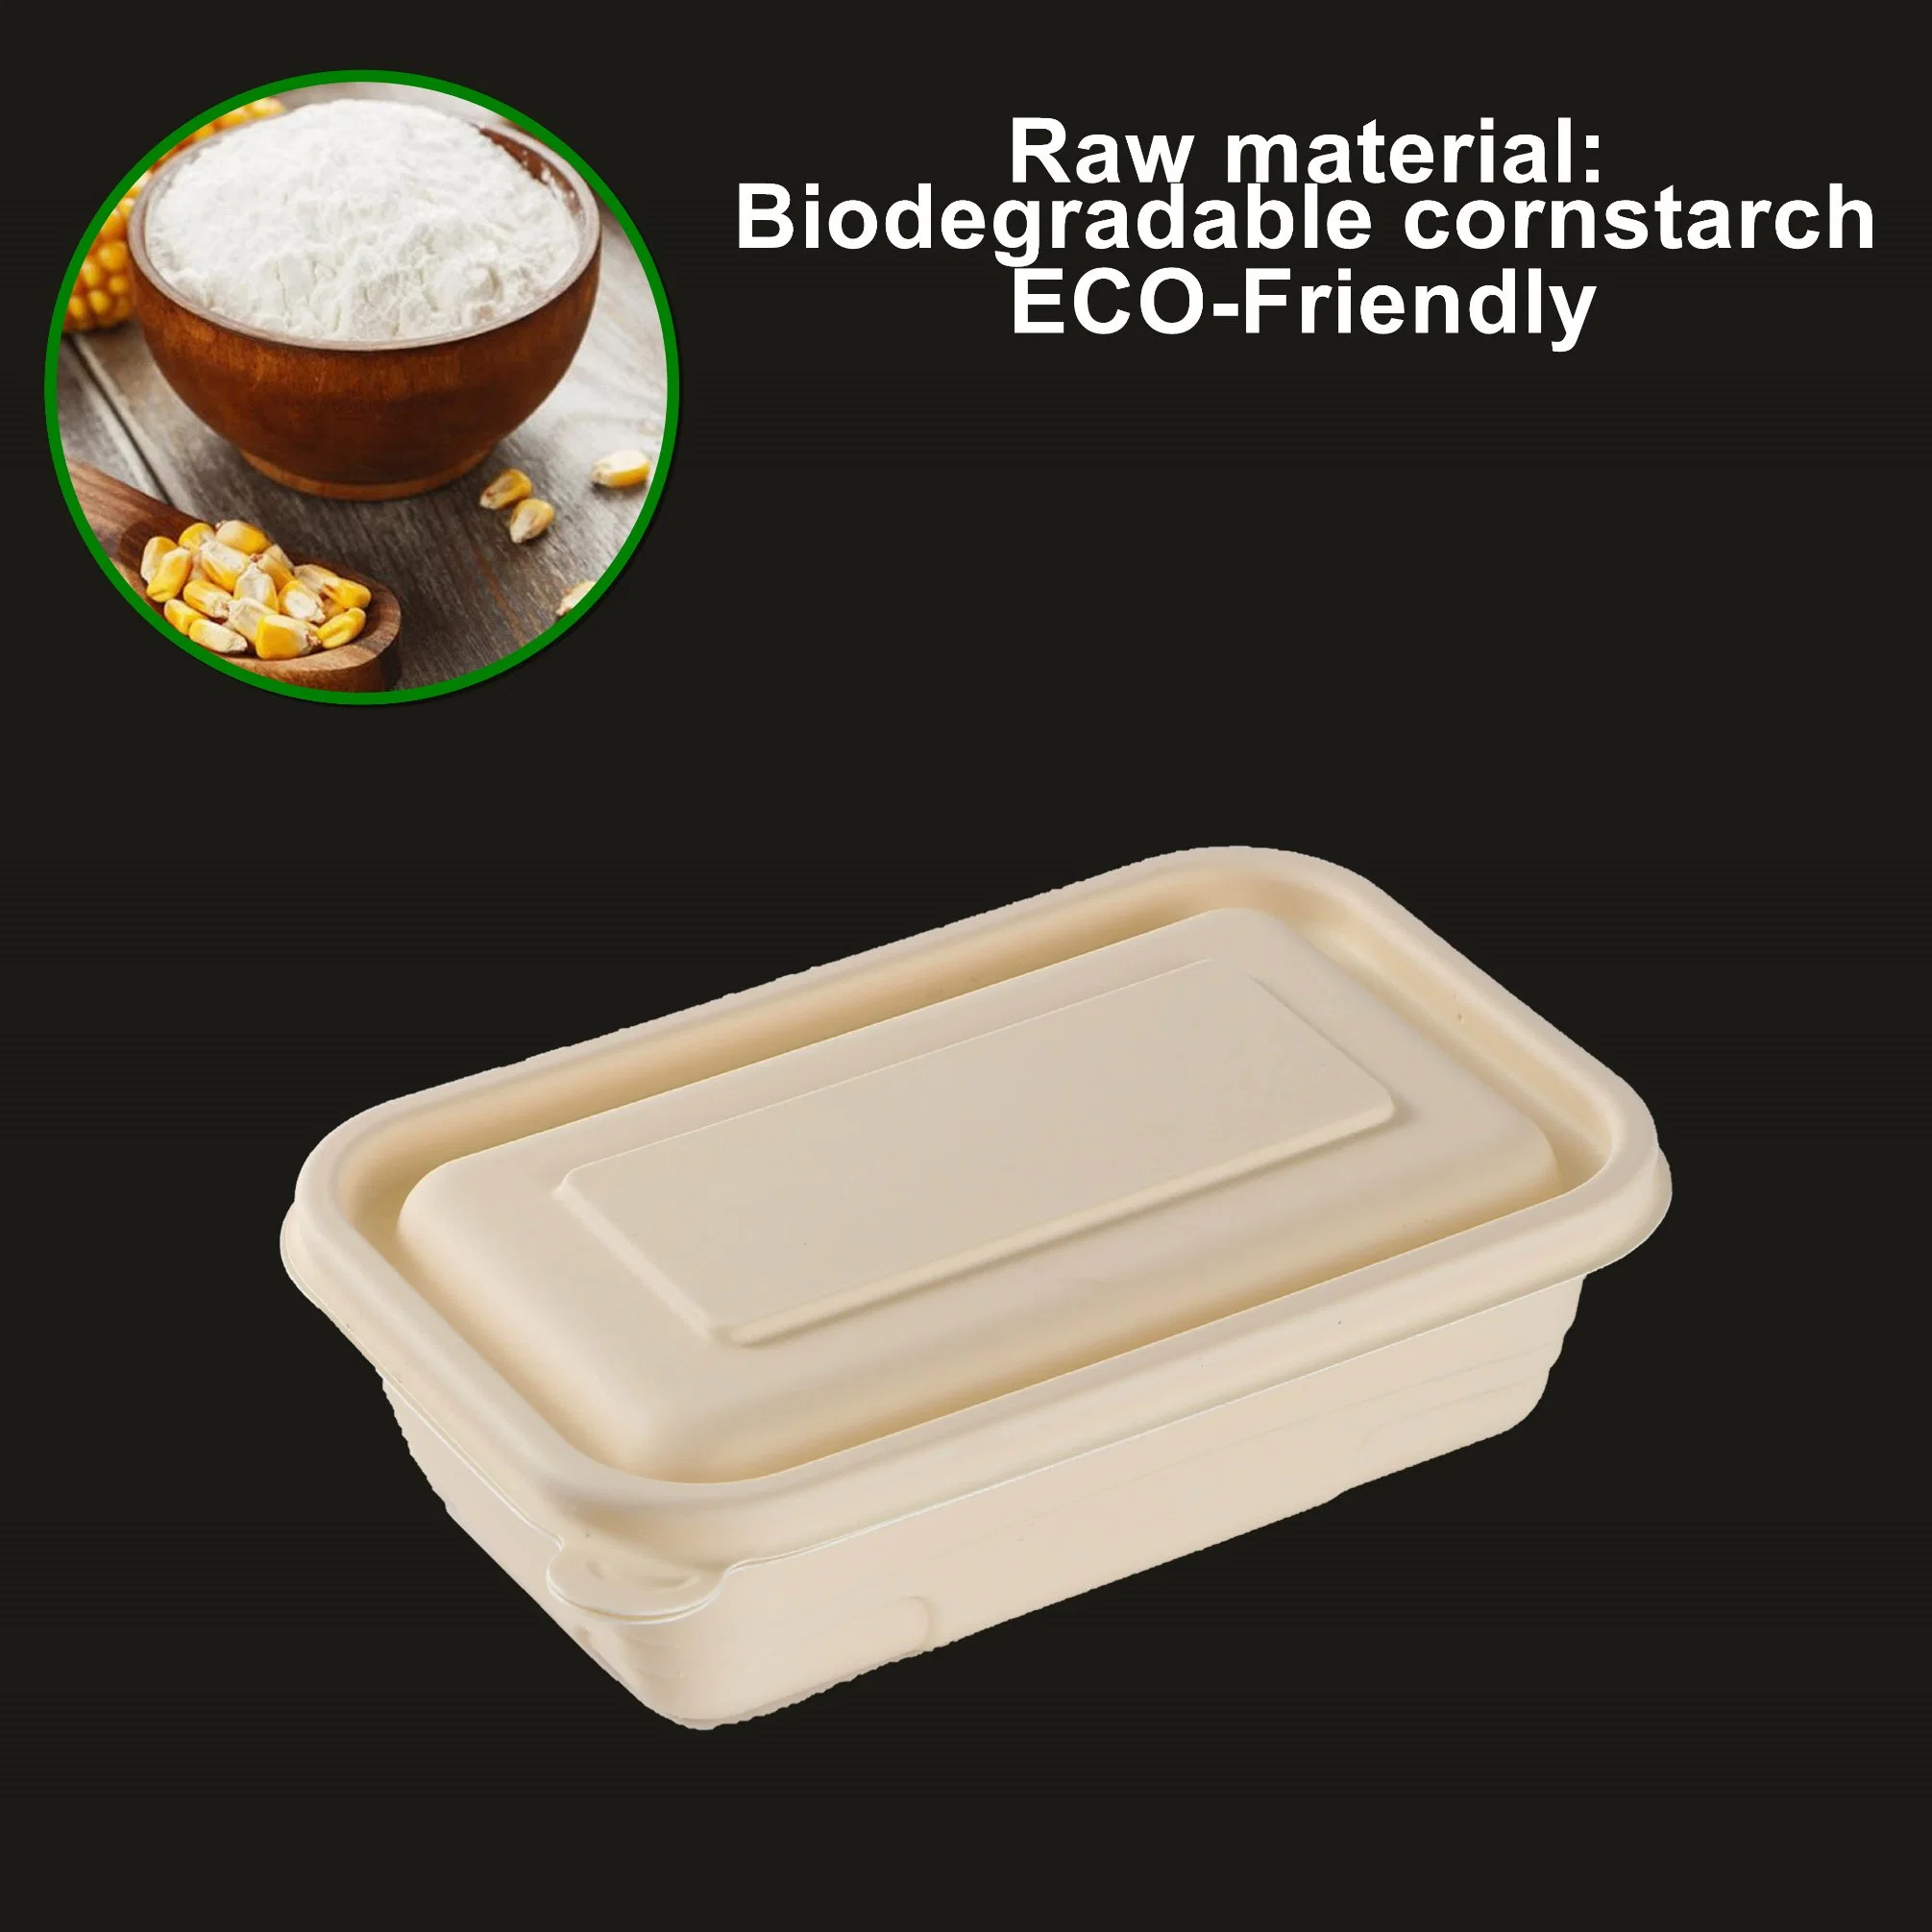 Biodegradable ecológica Contenedor de comida para llevar vajilla desechable Caja de comida rápida con tapa